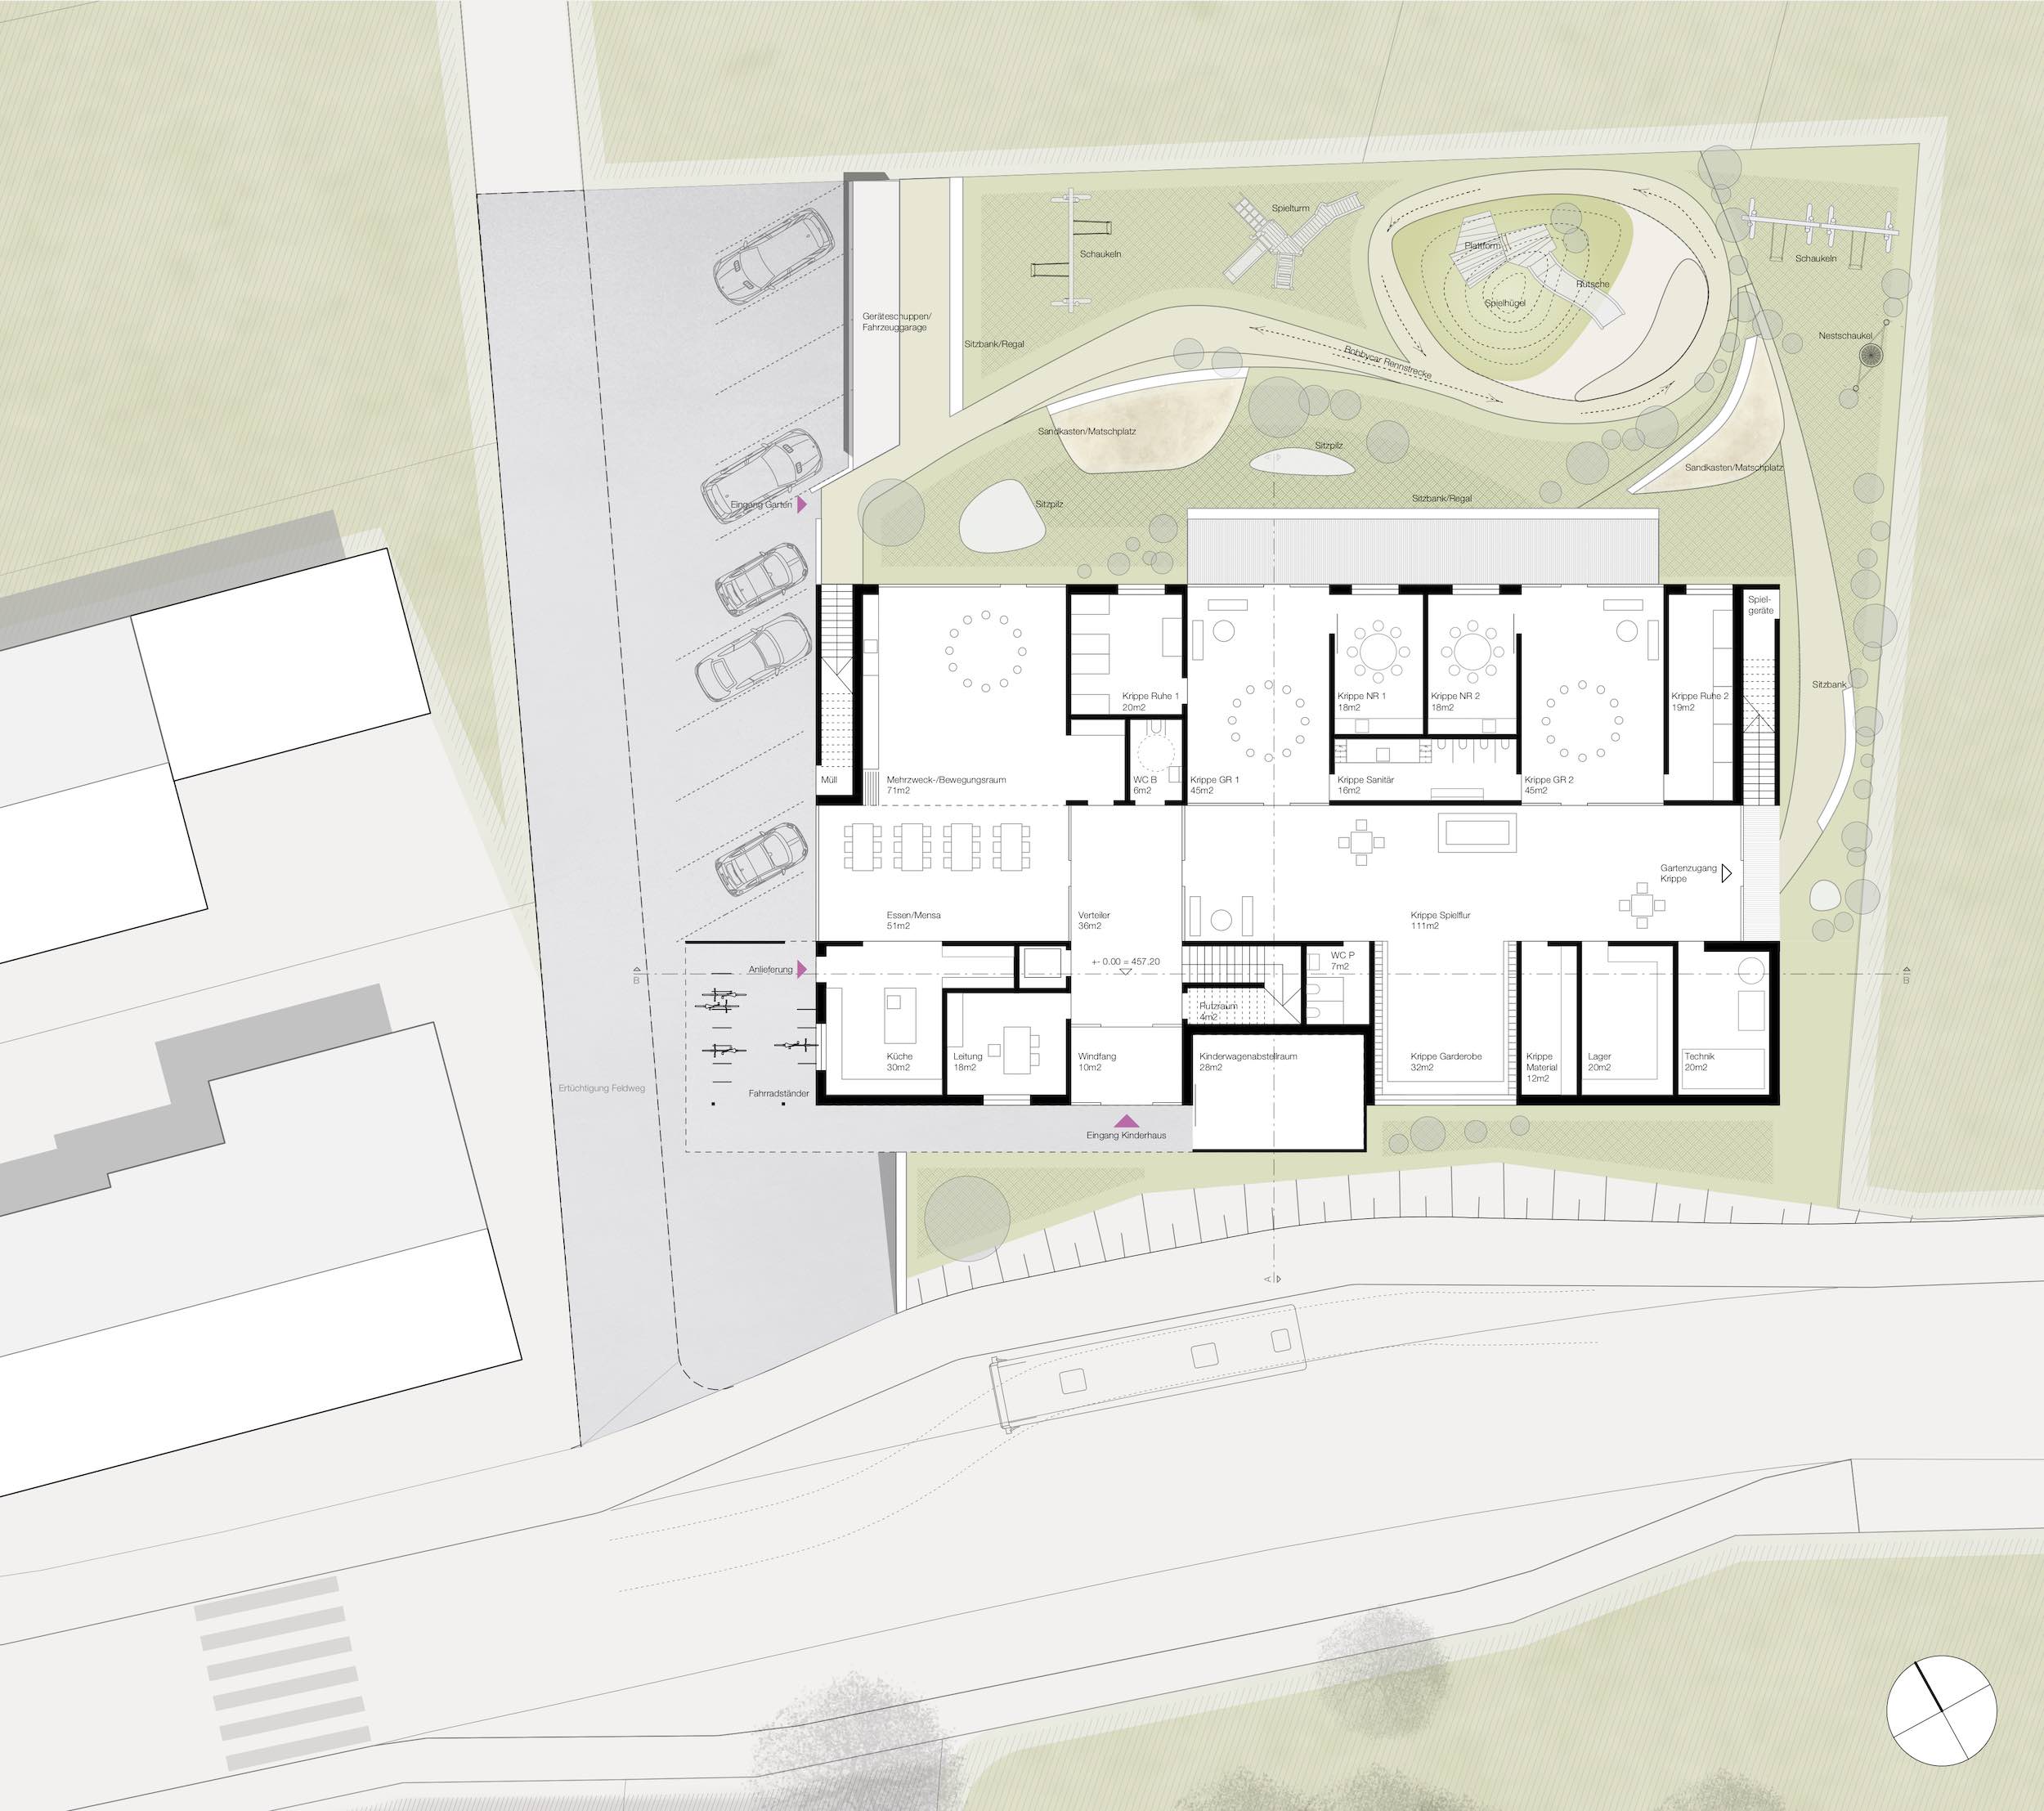 Bild zum Projekt Verhandlungsverfahren Neubau Kinderhaus Berg